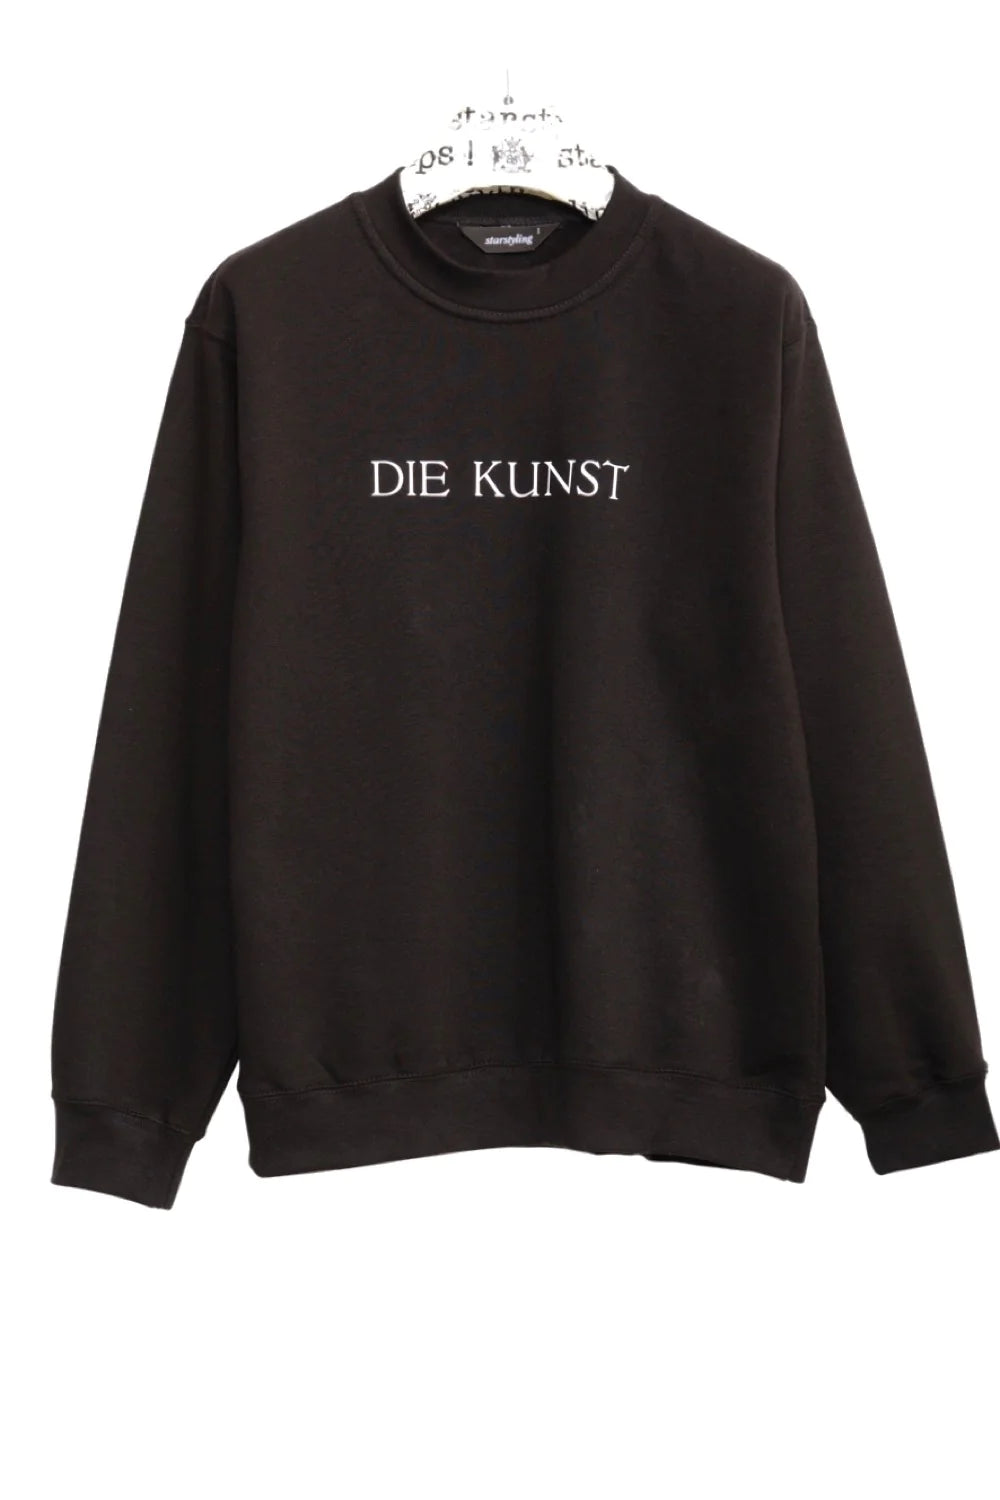 Sweatshirt "DIE KUNST" - black